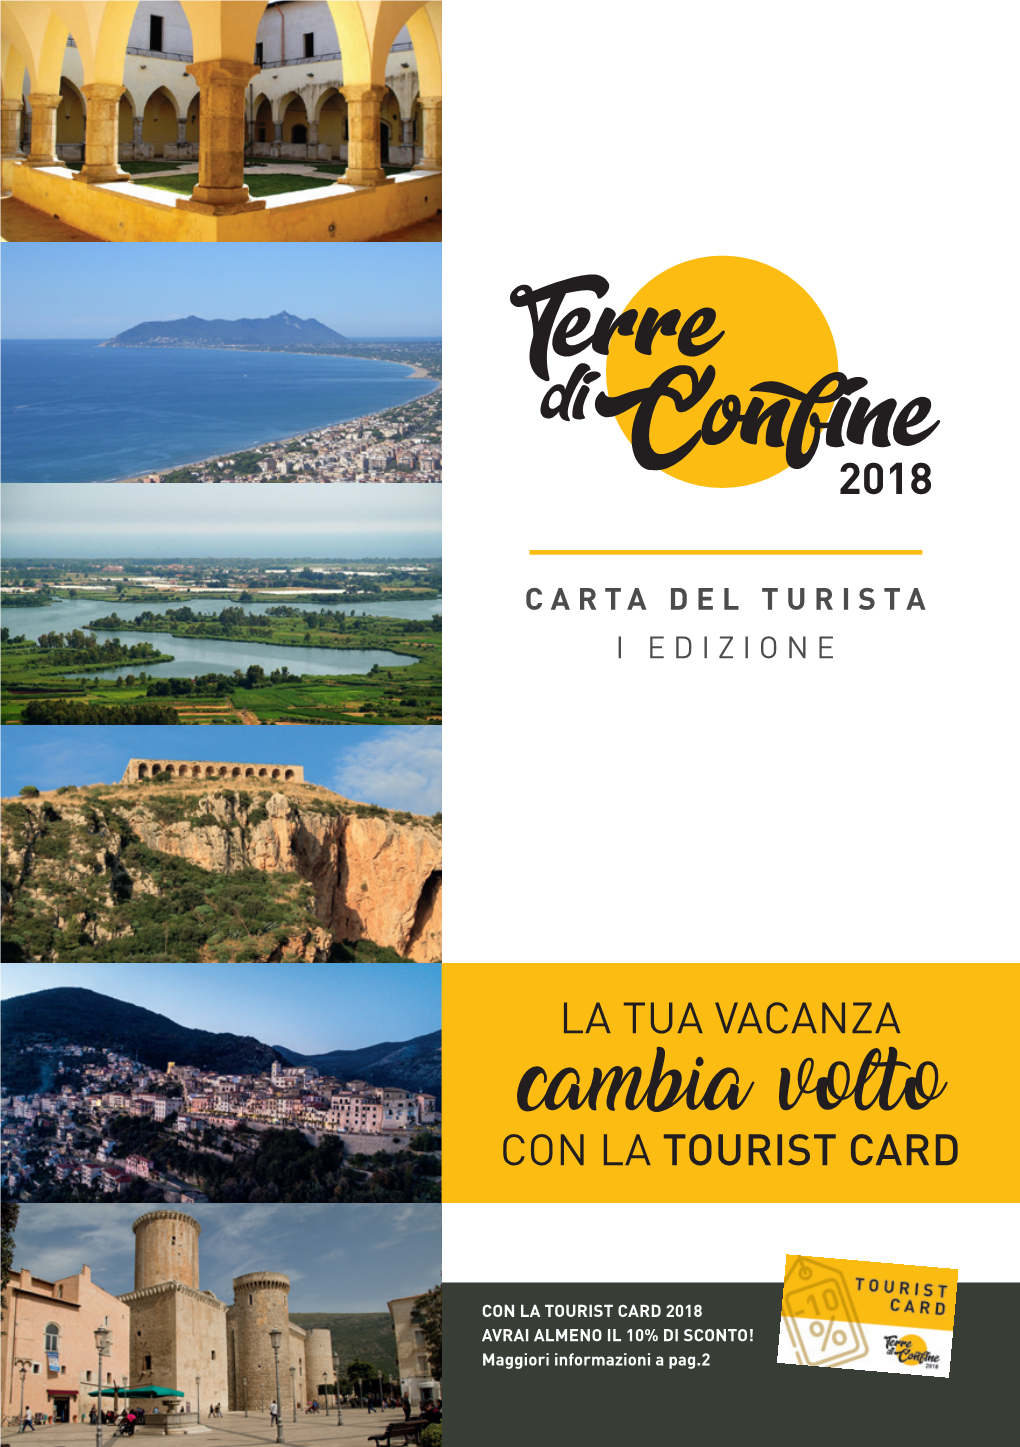 Carta Del Turista "Terre Di Confine"